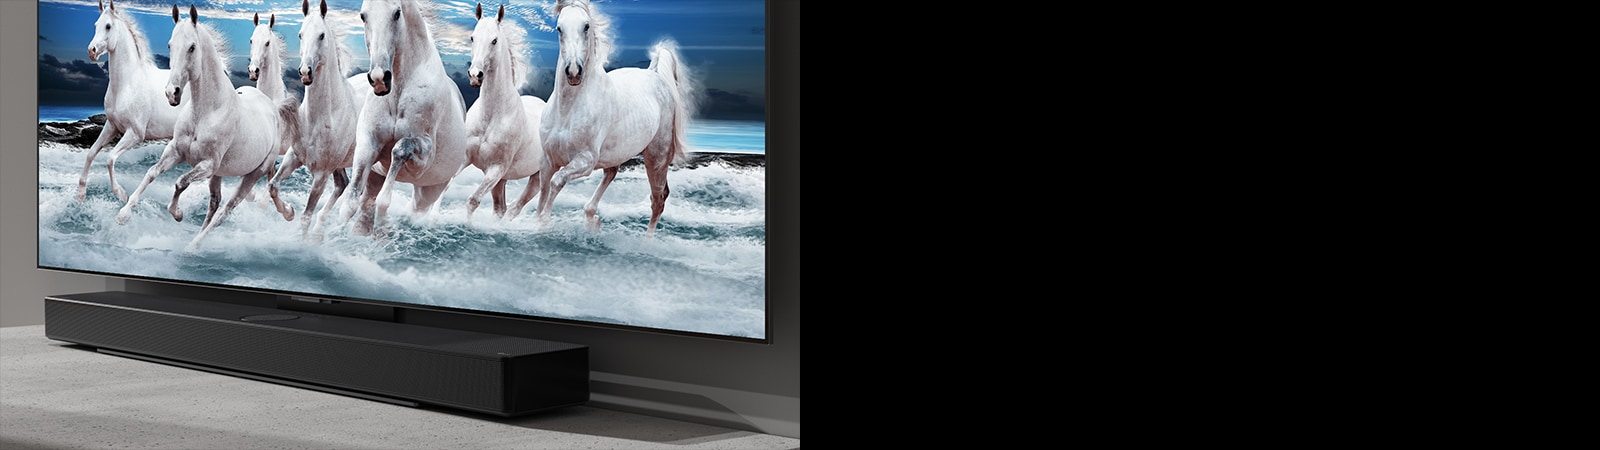 Zvukový panel a televízor sú položené na bielom stole, pričom na obrazovke televízora sa zobrazuje 7 bielych koní.